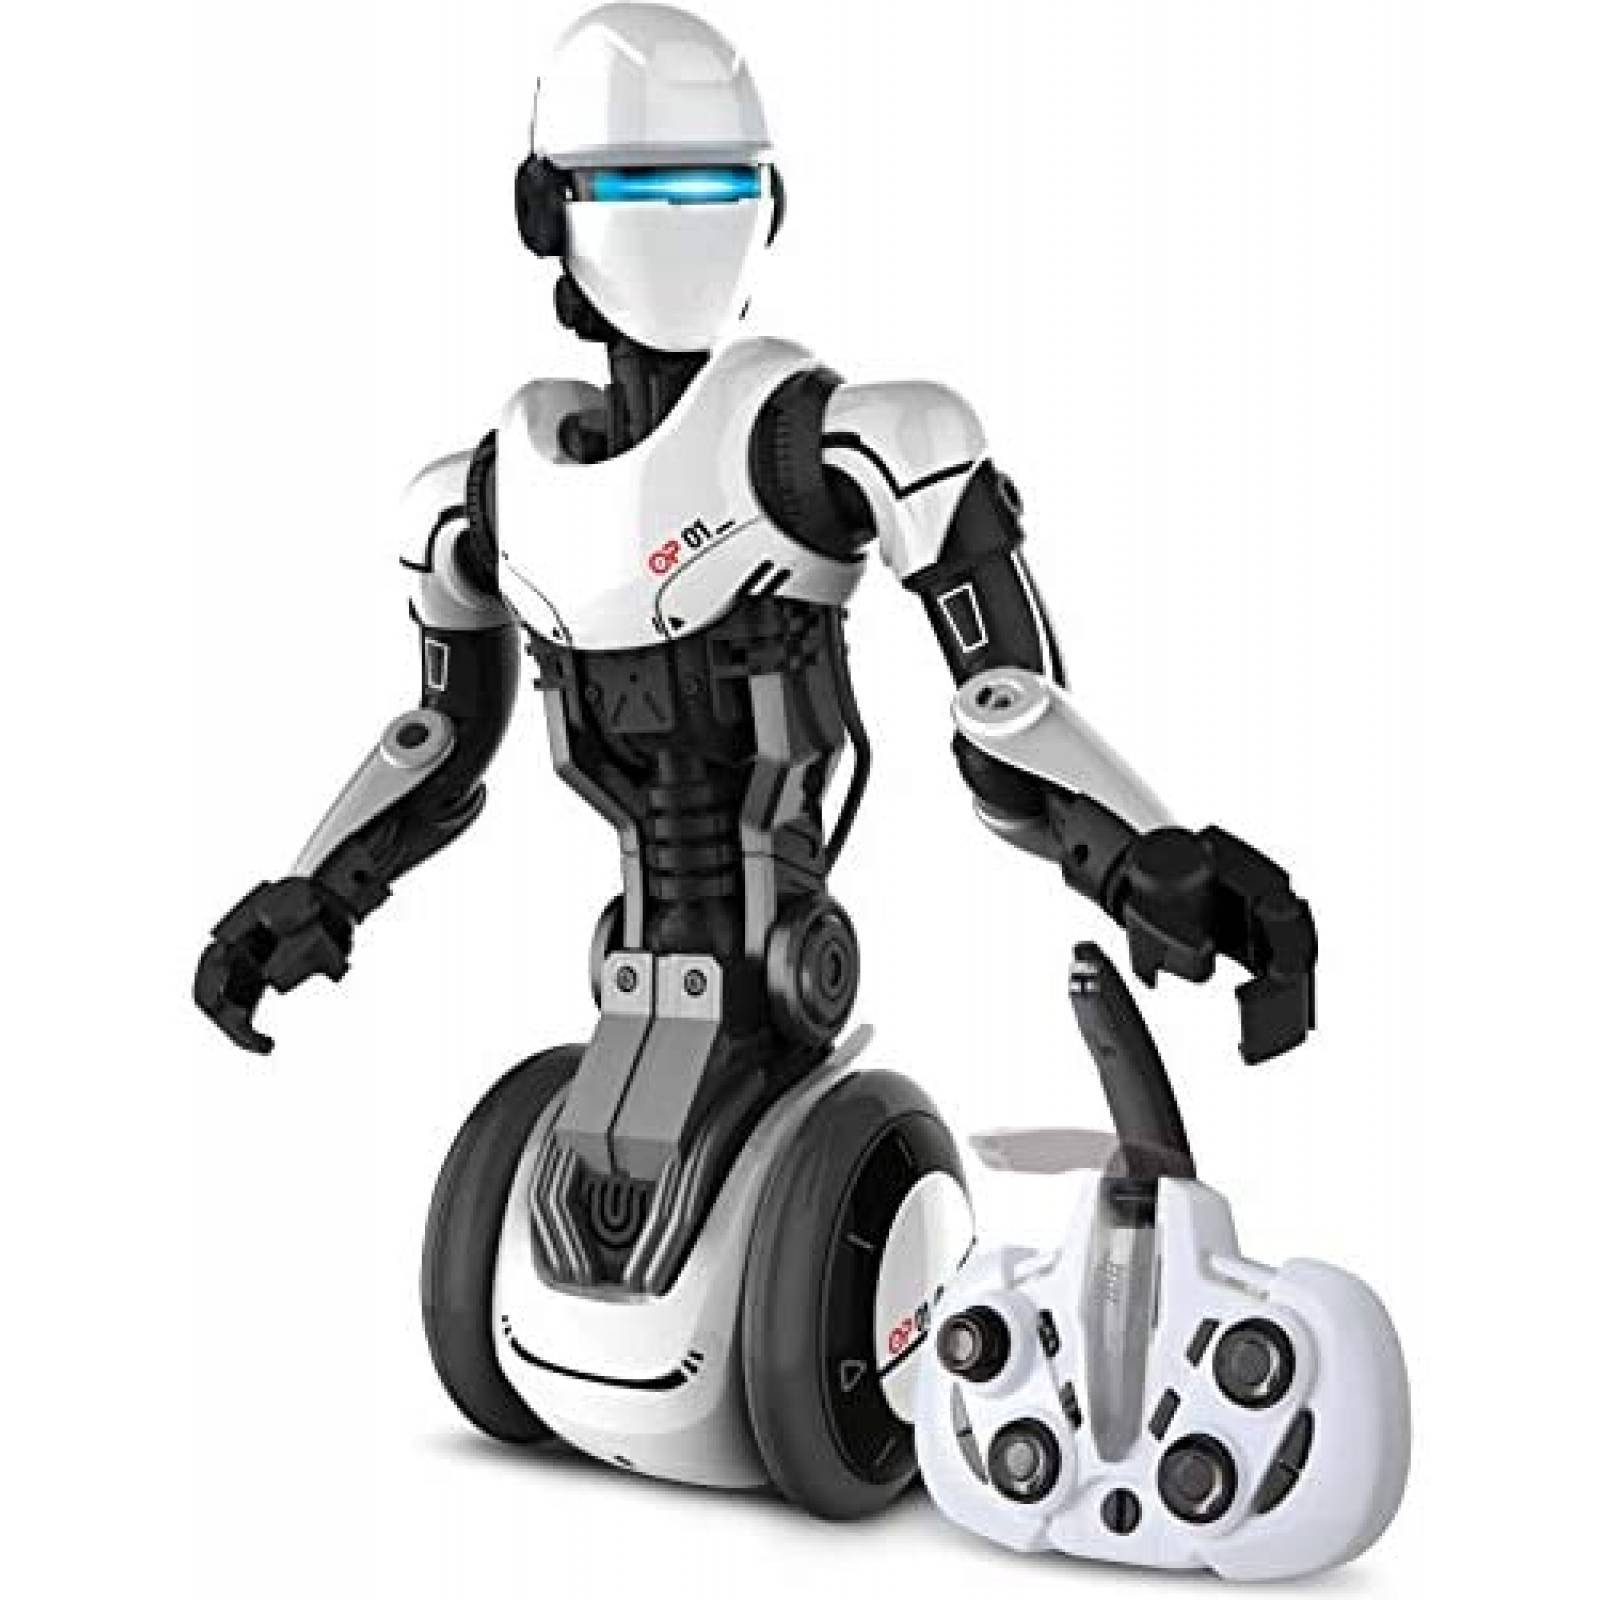 Robot Humanoide Sharper Image Movimiento de Brazos y Manos